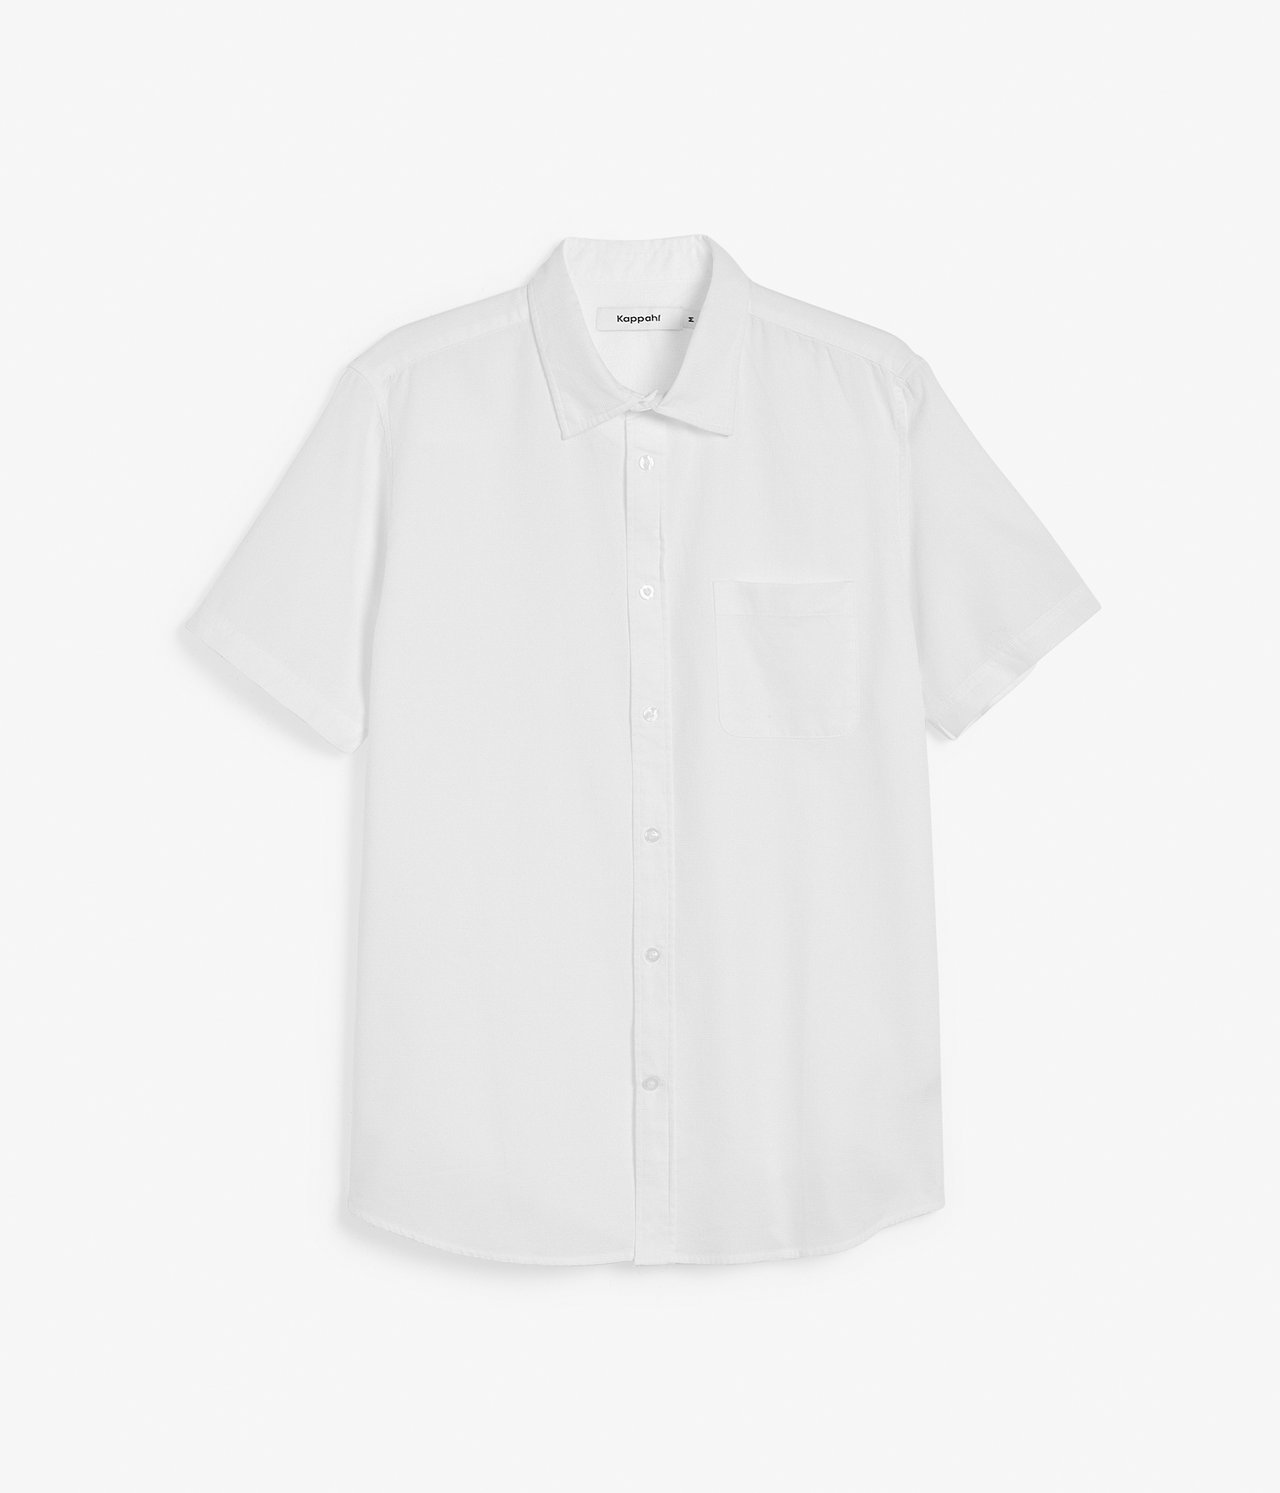 Koszula z krótkim rękawem regular fit - Biały - 6